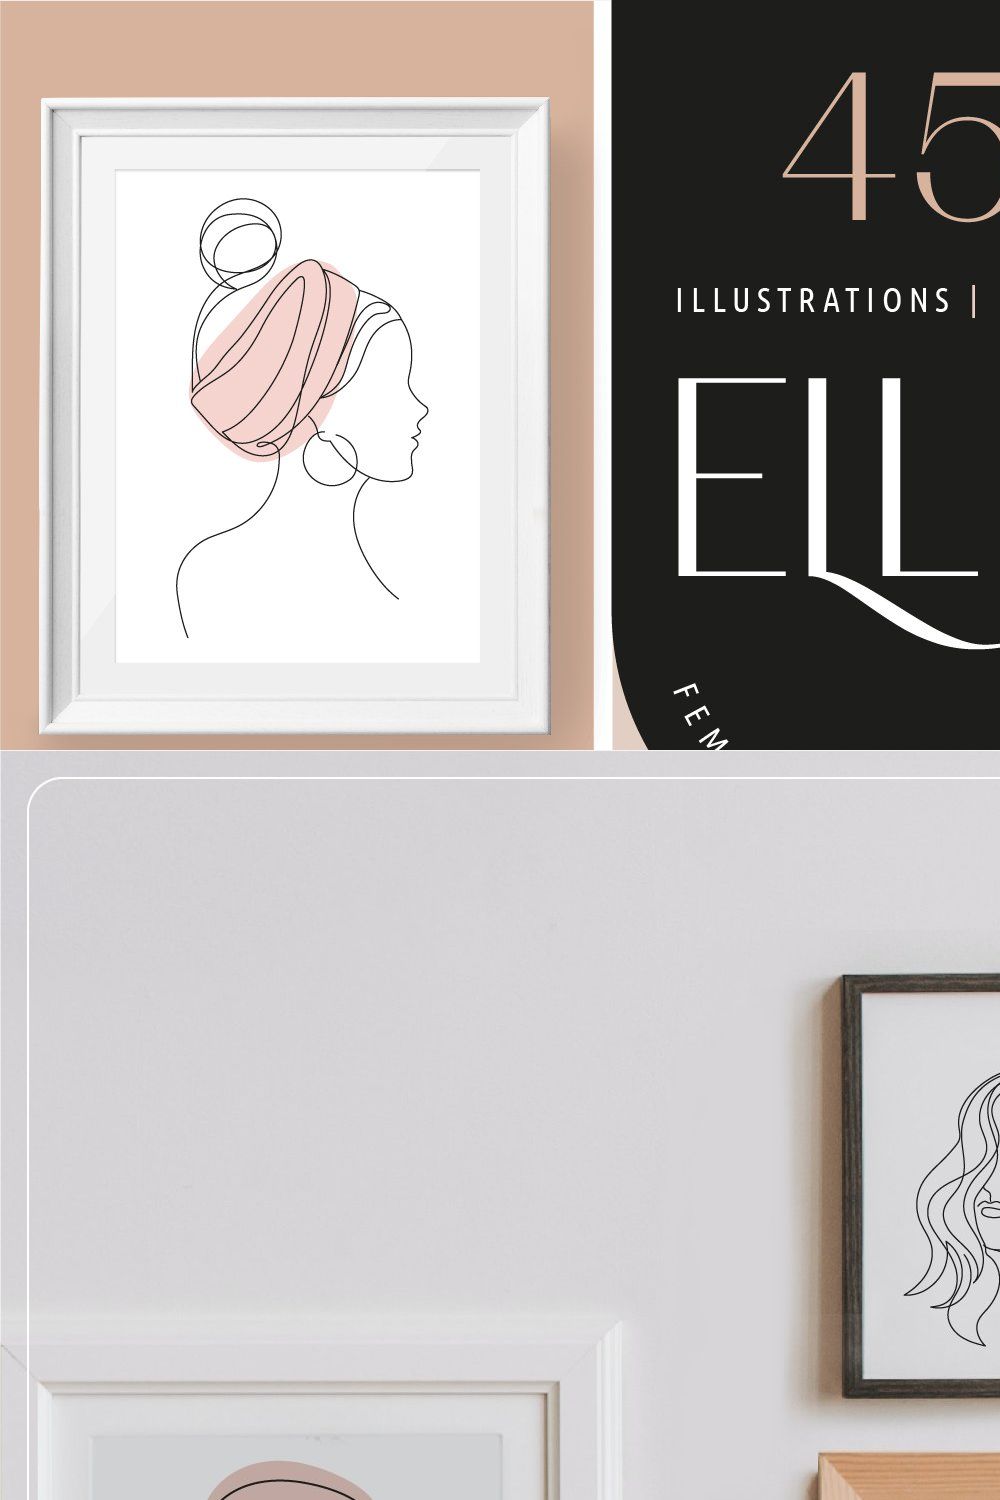 Elle - feminine beauty logos and art pinterest preview image.